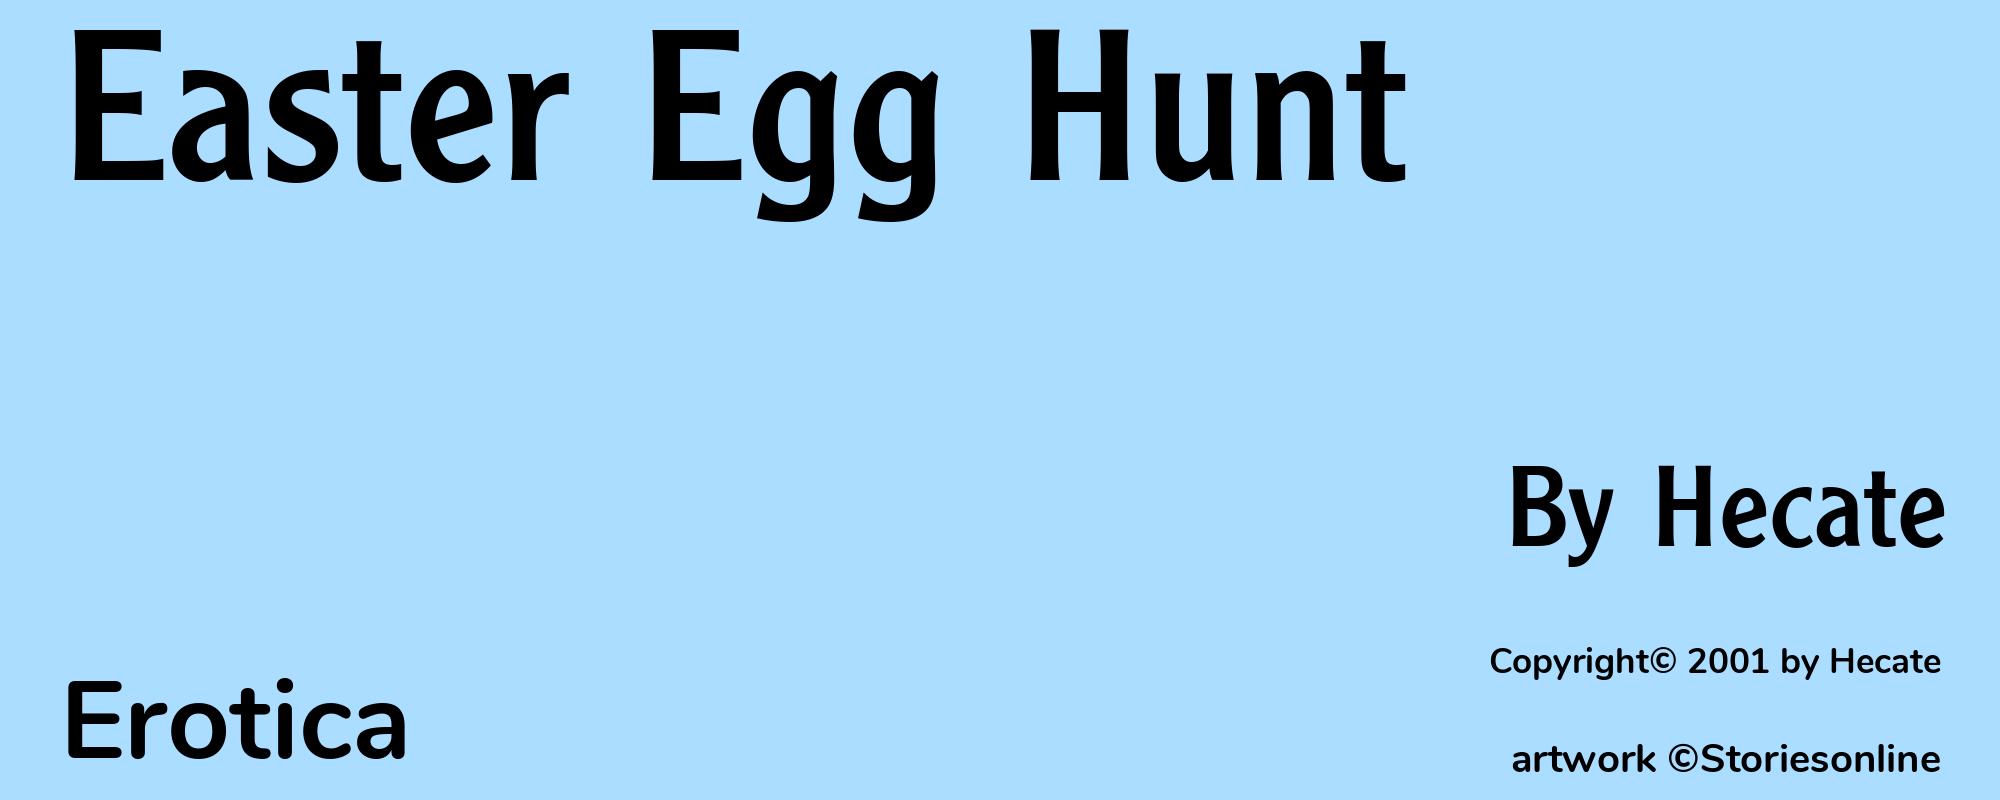 Easter Egg Hunt - Cover